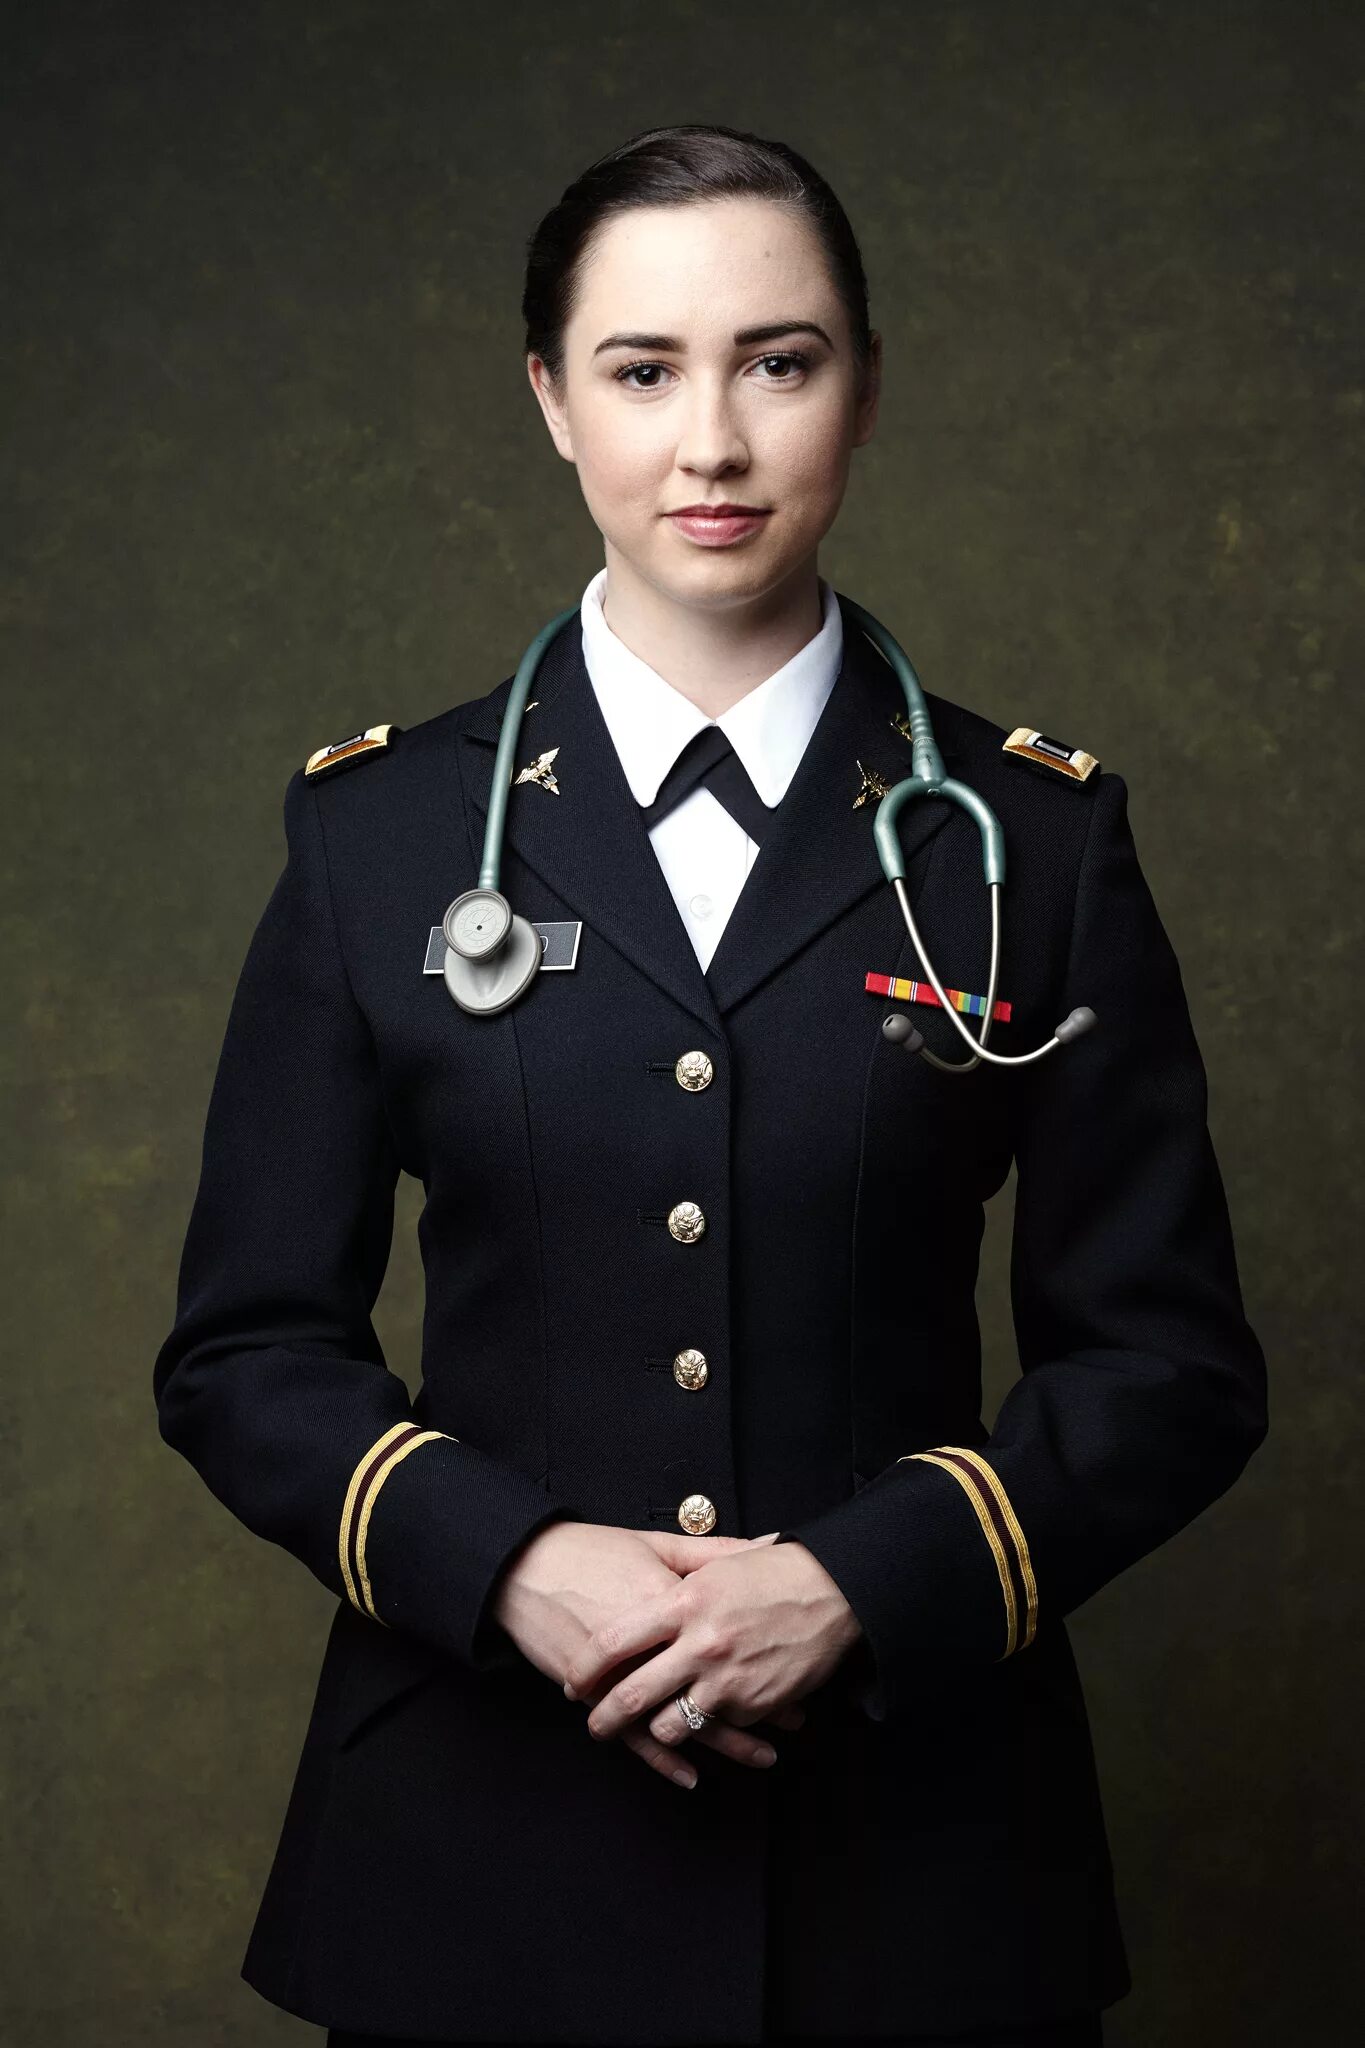 Военная женская форма. Женскамявоенная форма. Женщины в военной форме. Женщина офицер. Девушка военный врач